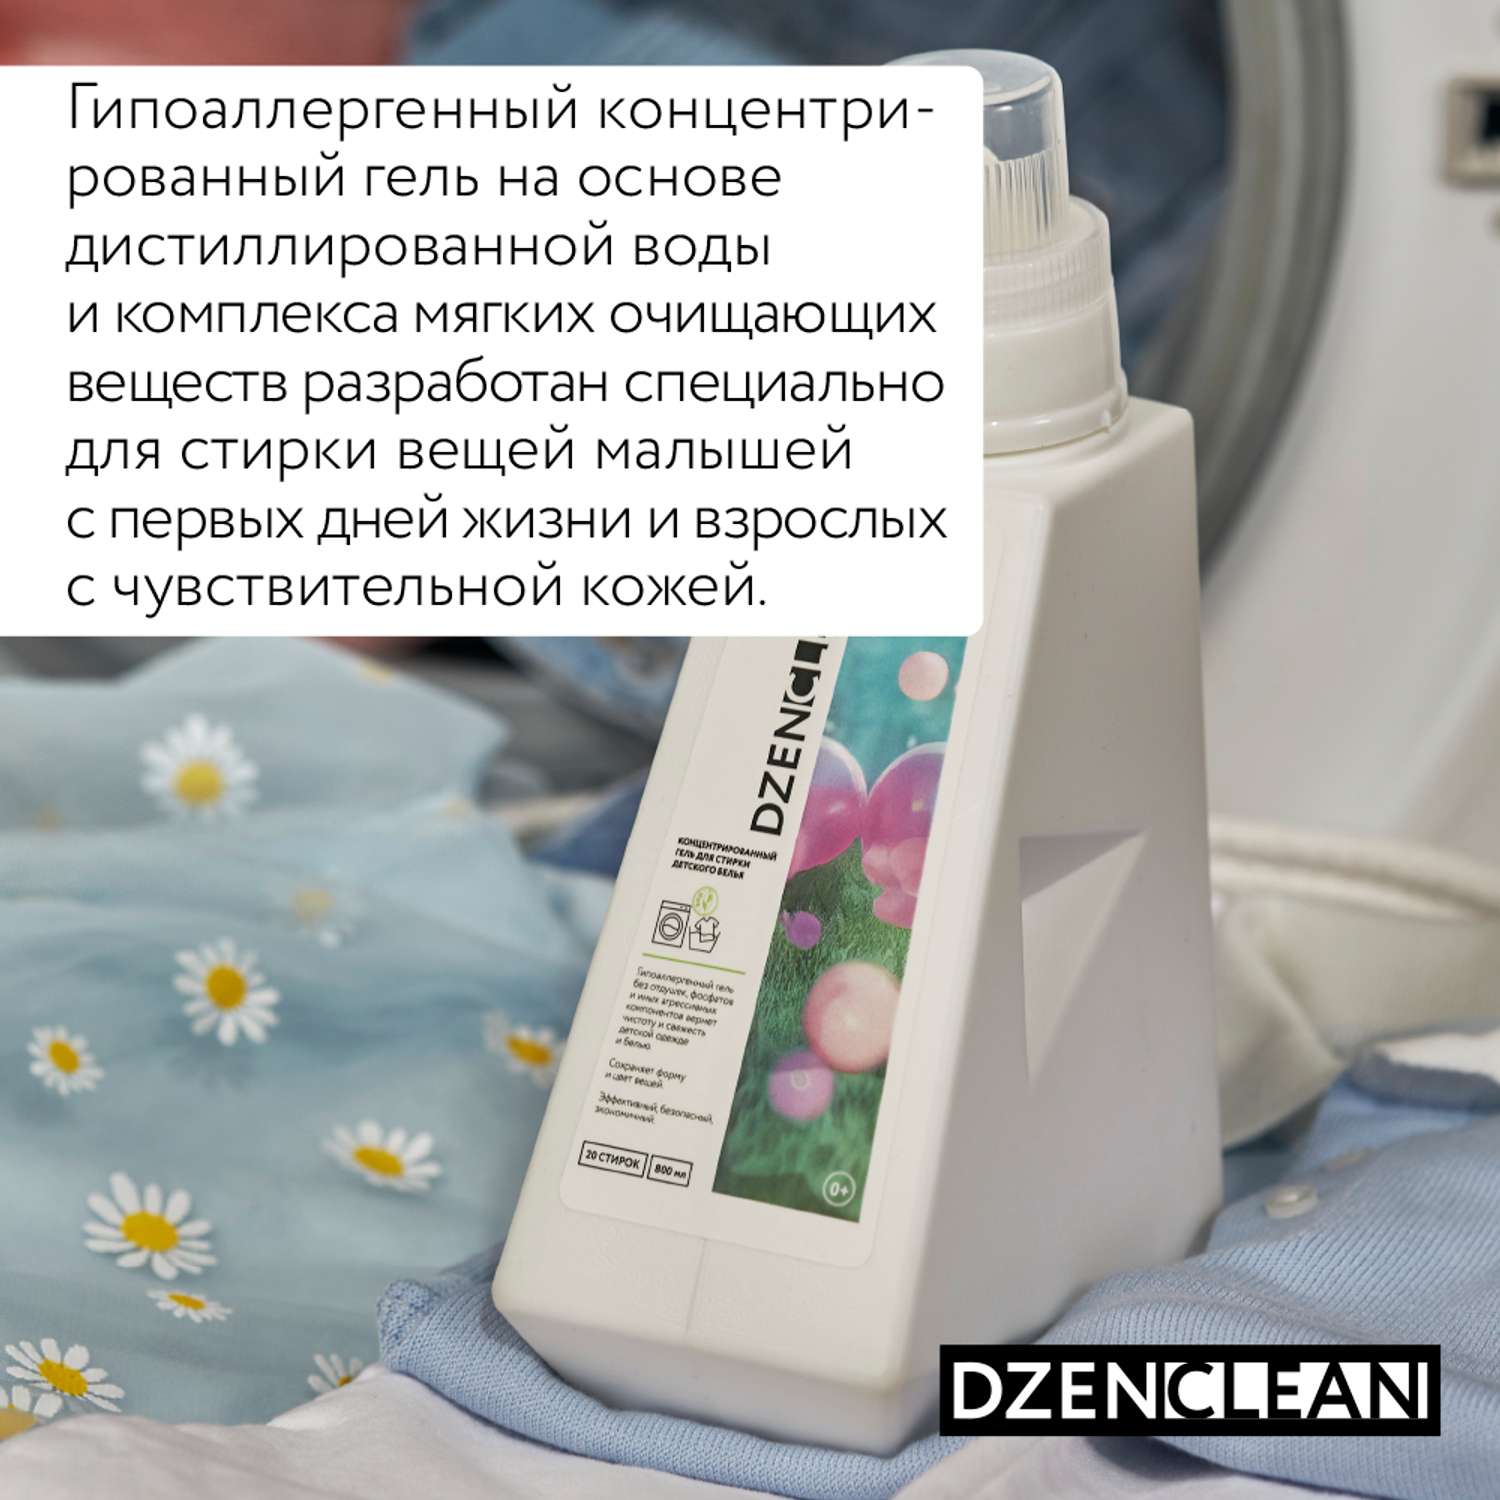 Гель для стирки DzenClean гипоаллергенный концентрированный для детского белья 800 мл - фото 3